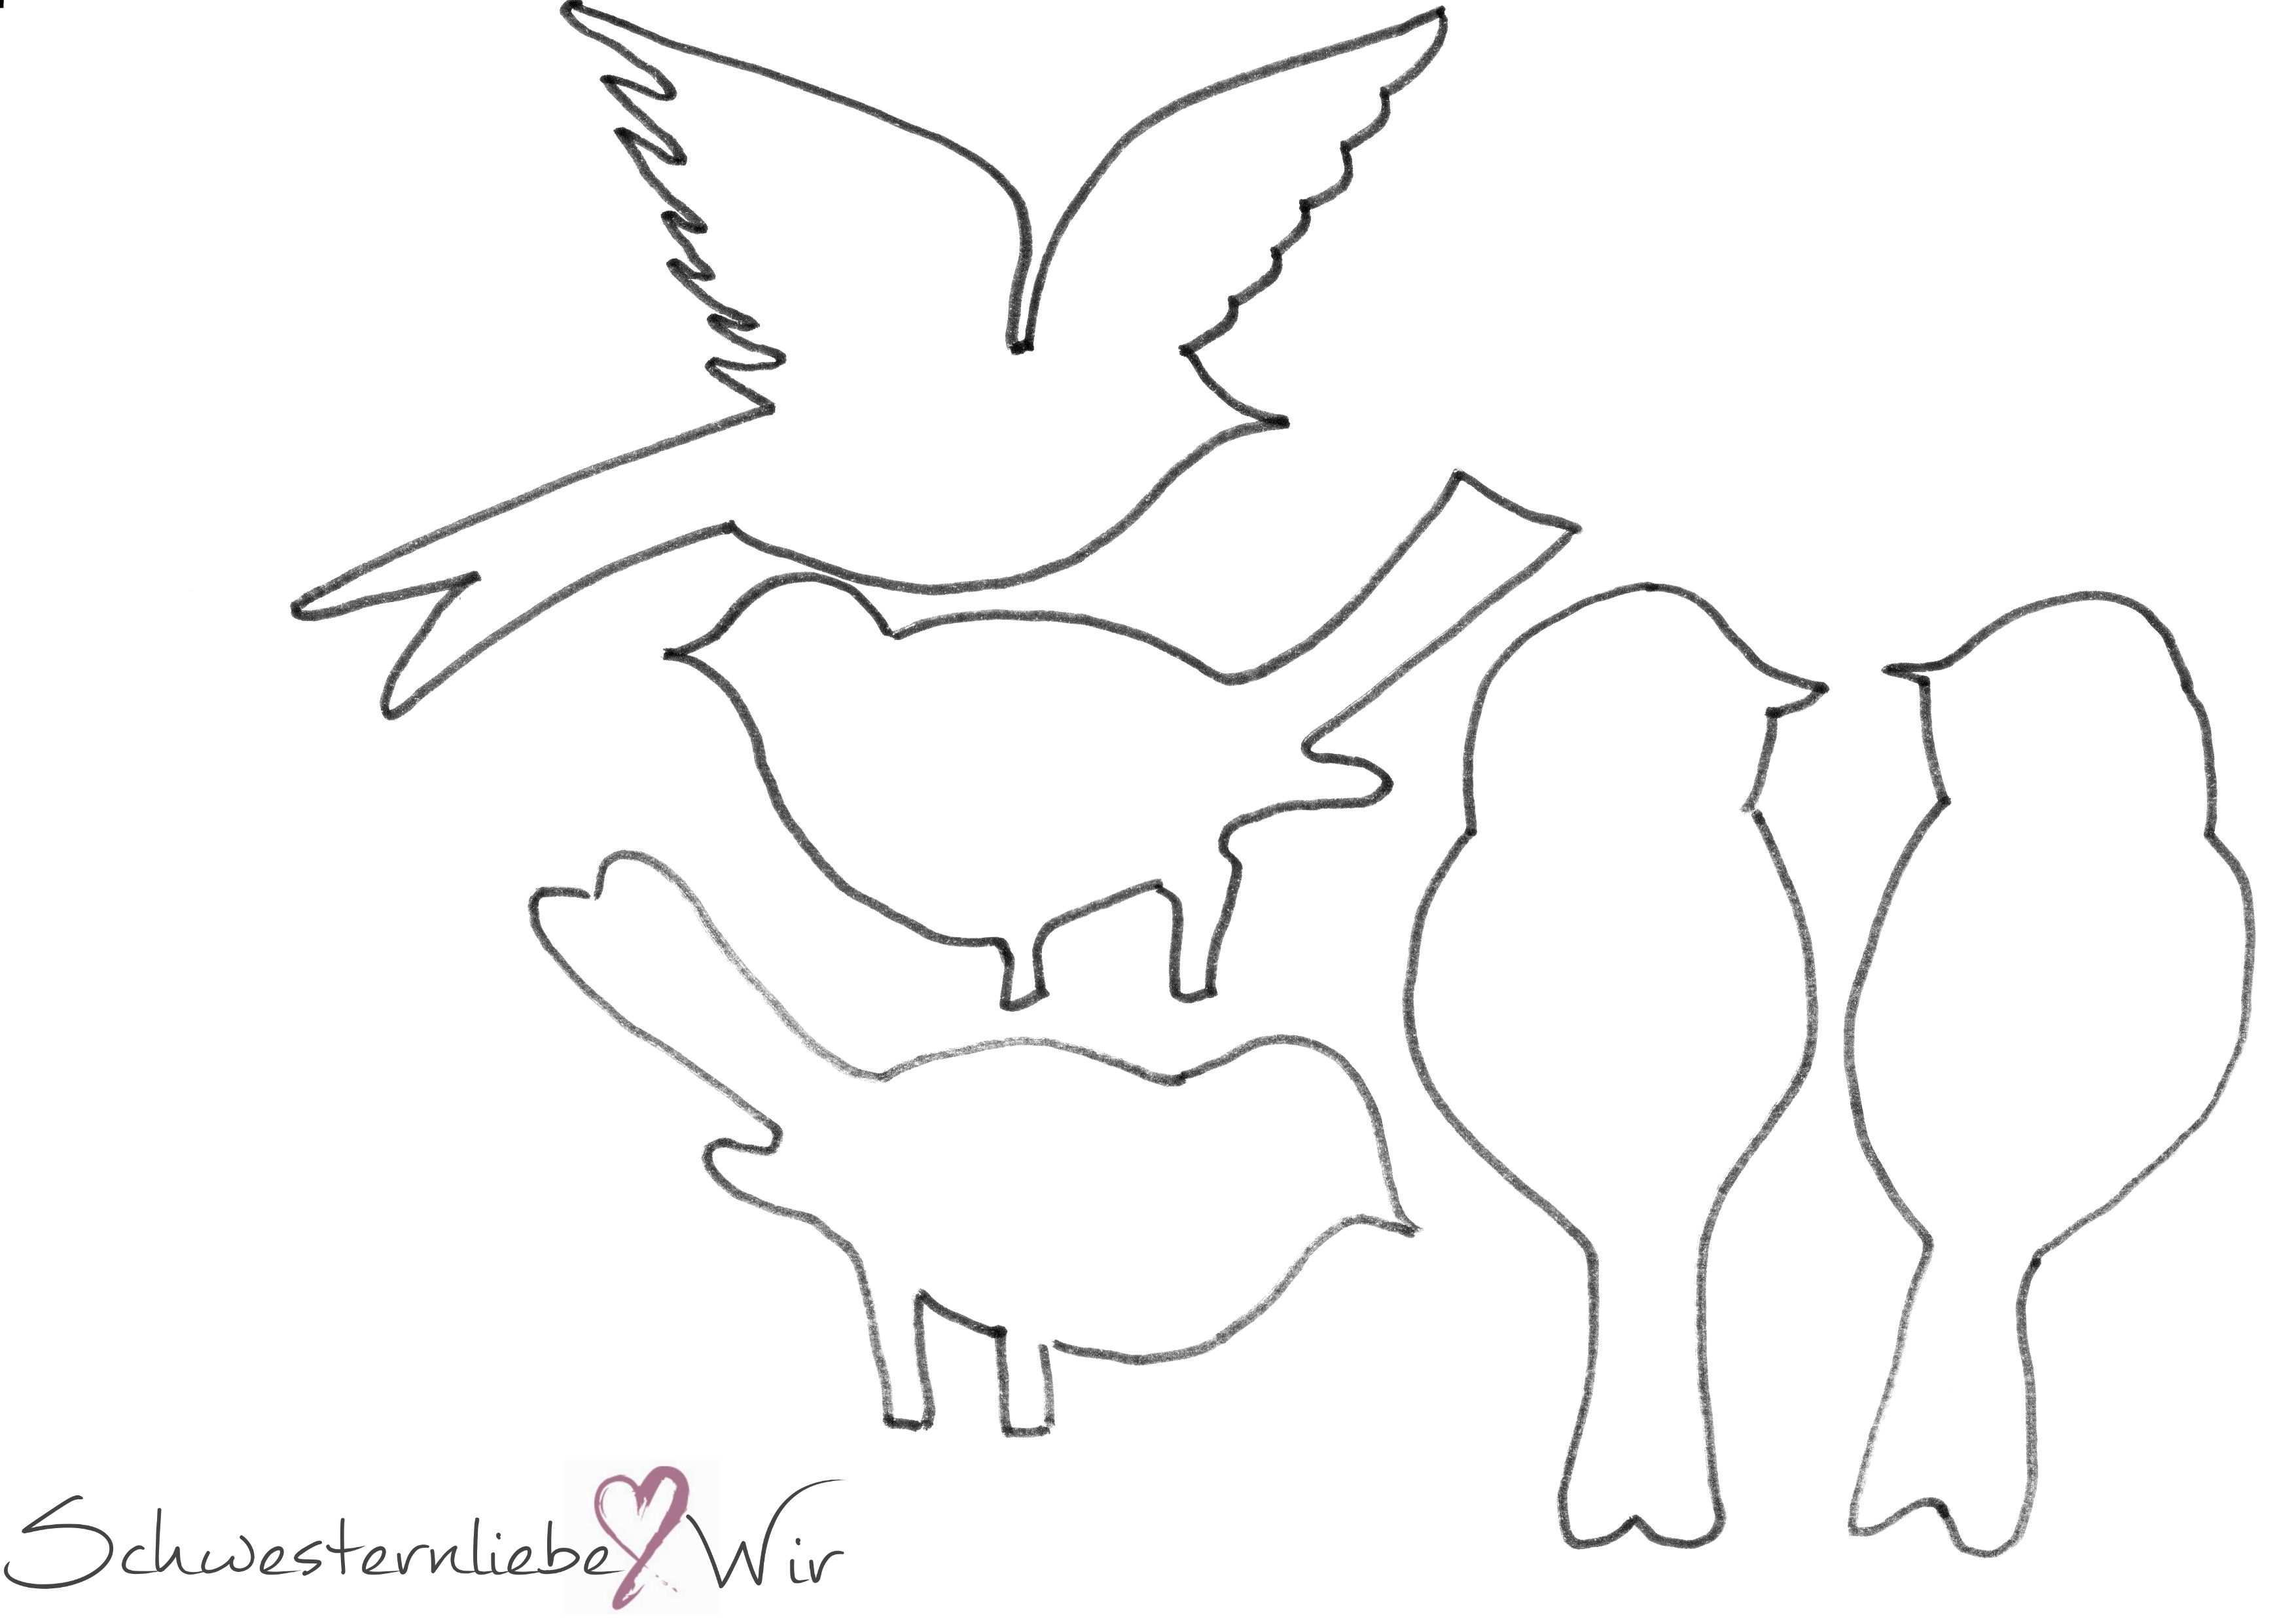 Druckvorlage Vogel Drucken Jpg 3 508 2 480 Pixel Vogel Vorlage Susse Tiere Zeichnen Basteln Fruhling Kinder